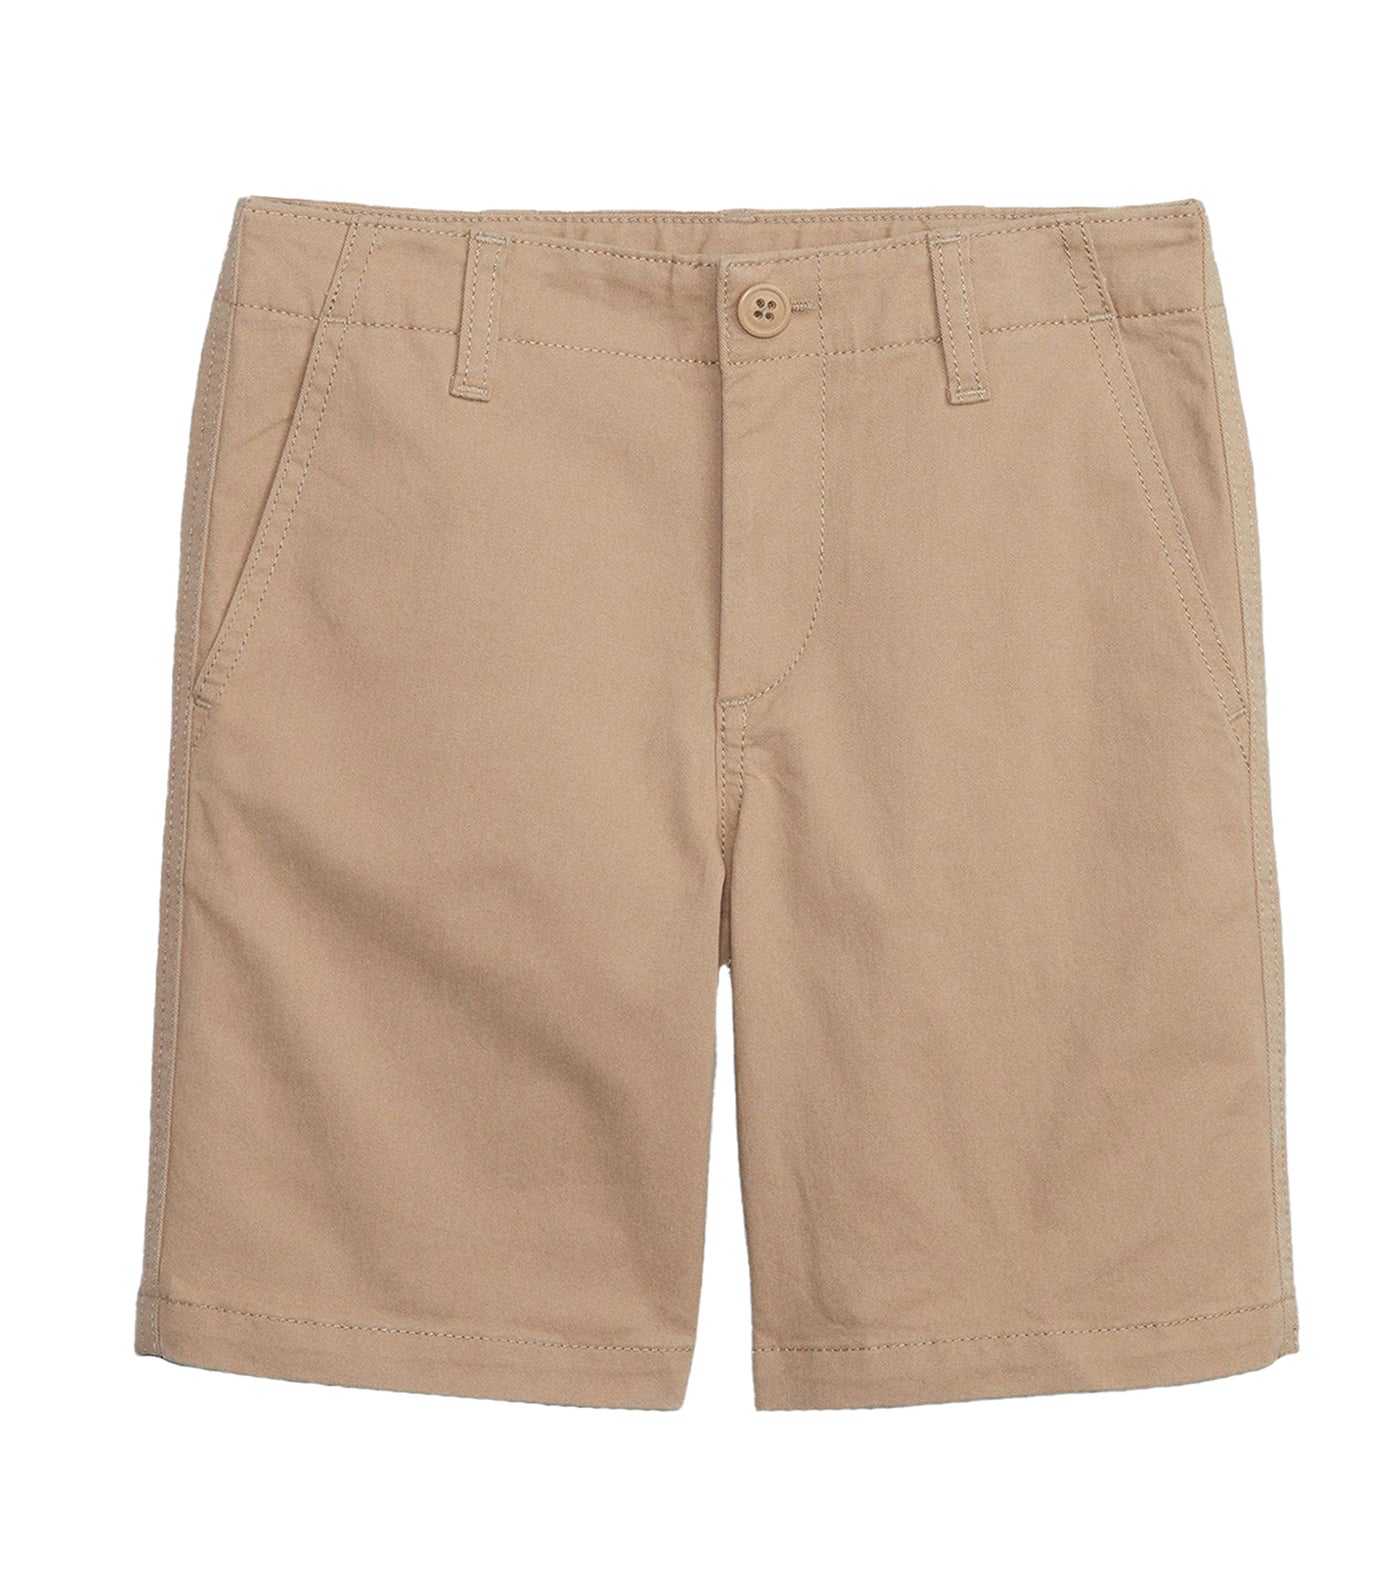 Khaki Shorts with Washwell - New Sand